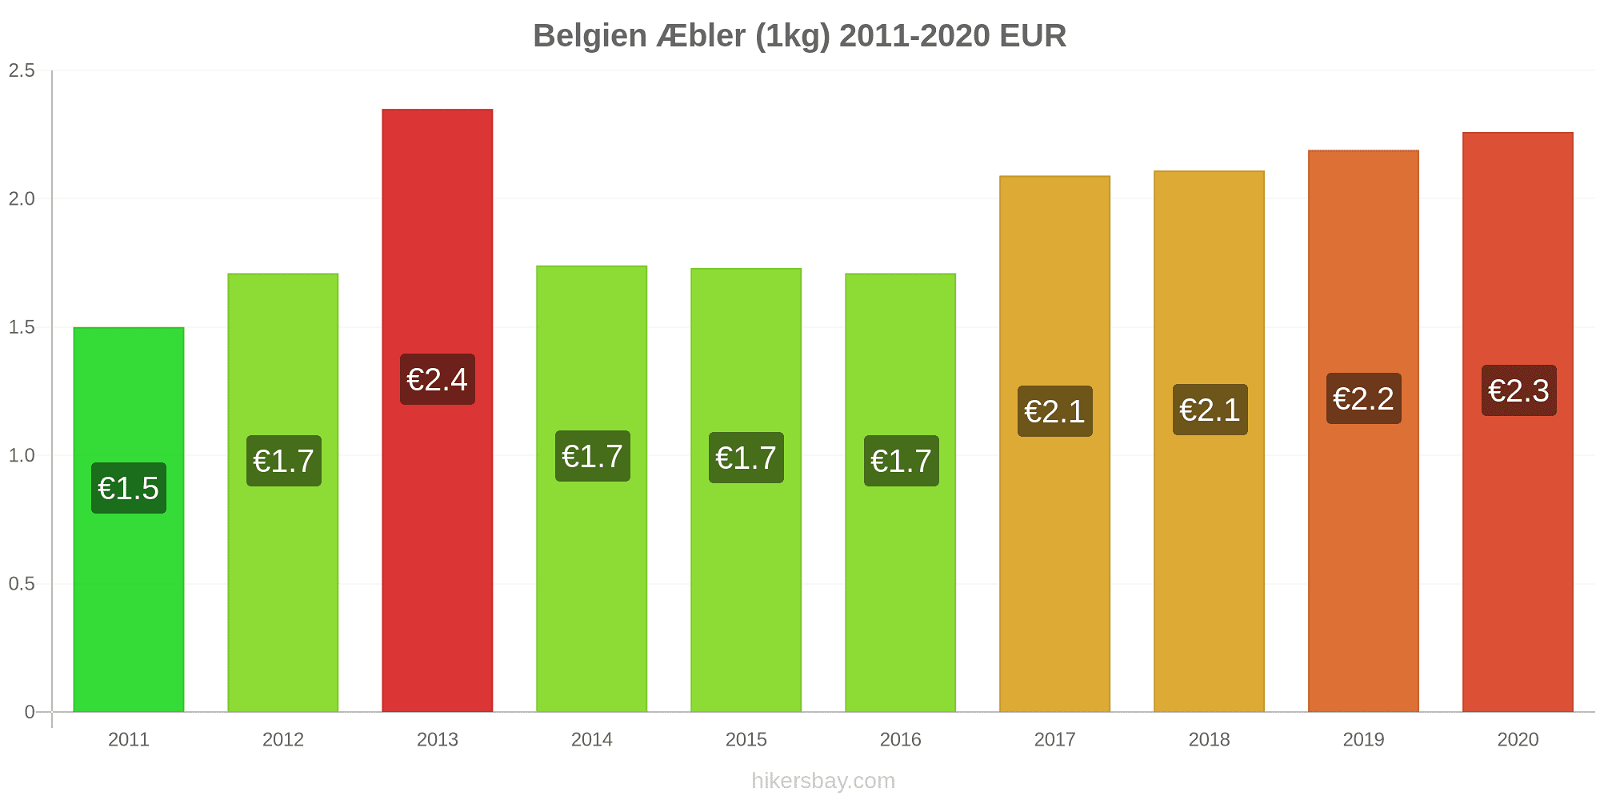 Belgien prisændringer Æbler (1kg) hikersbay.com